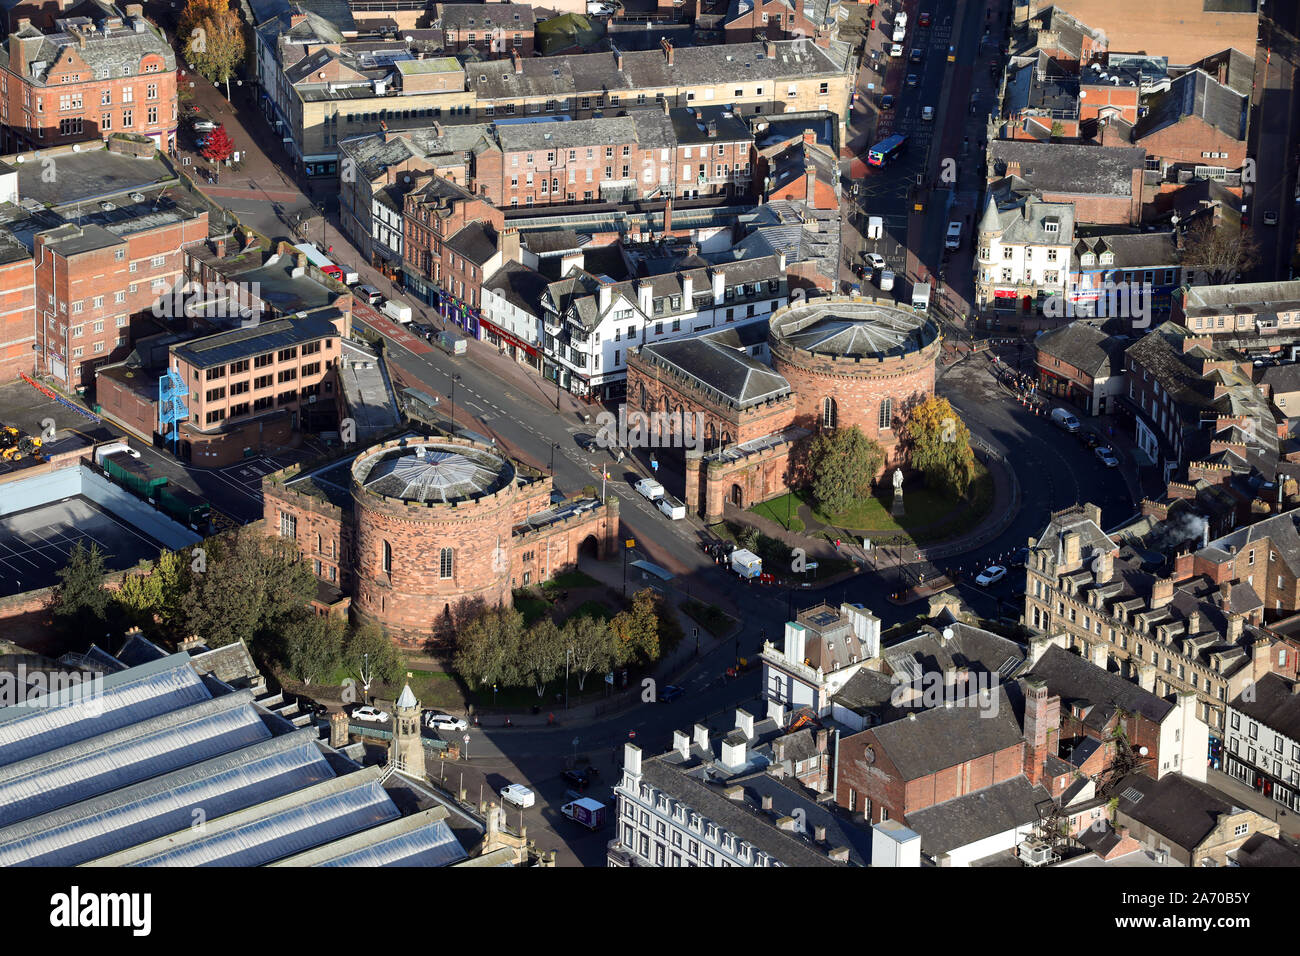 Vista aerea del Bochard gate o gate inglese, mura medievali a Carlisle, Cumbria, Regno Unito Foto Stock